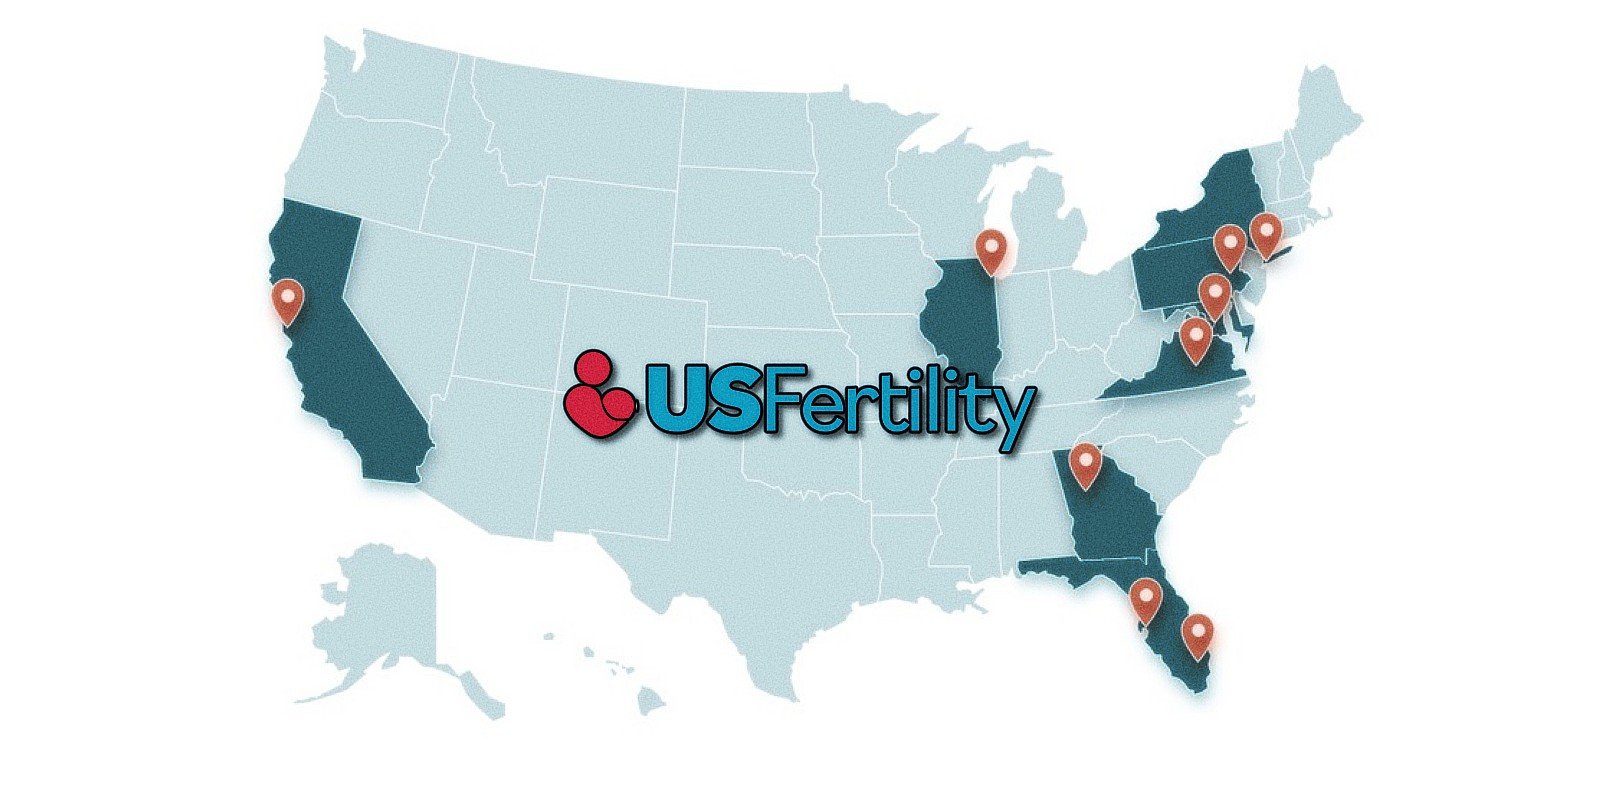 Ransomware hits largest US fertility network, patient data stolen